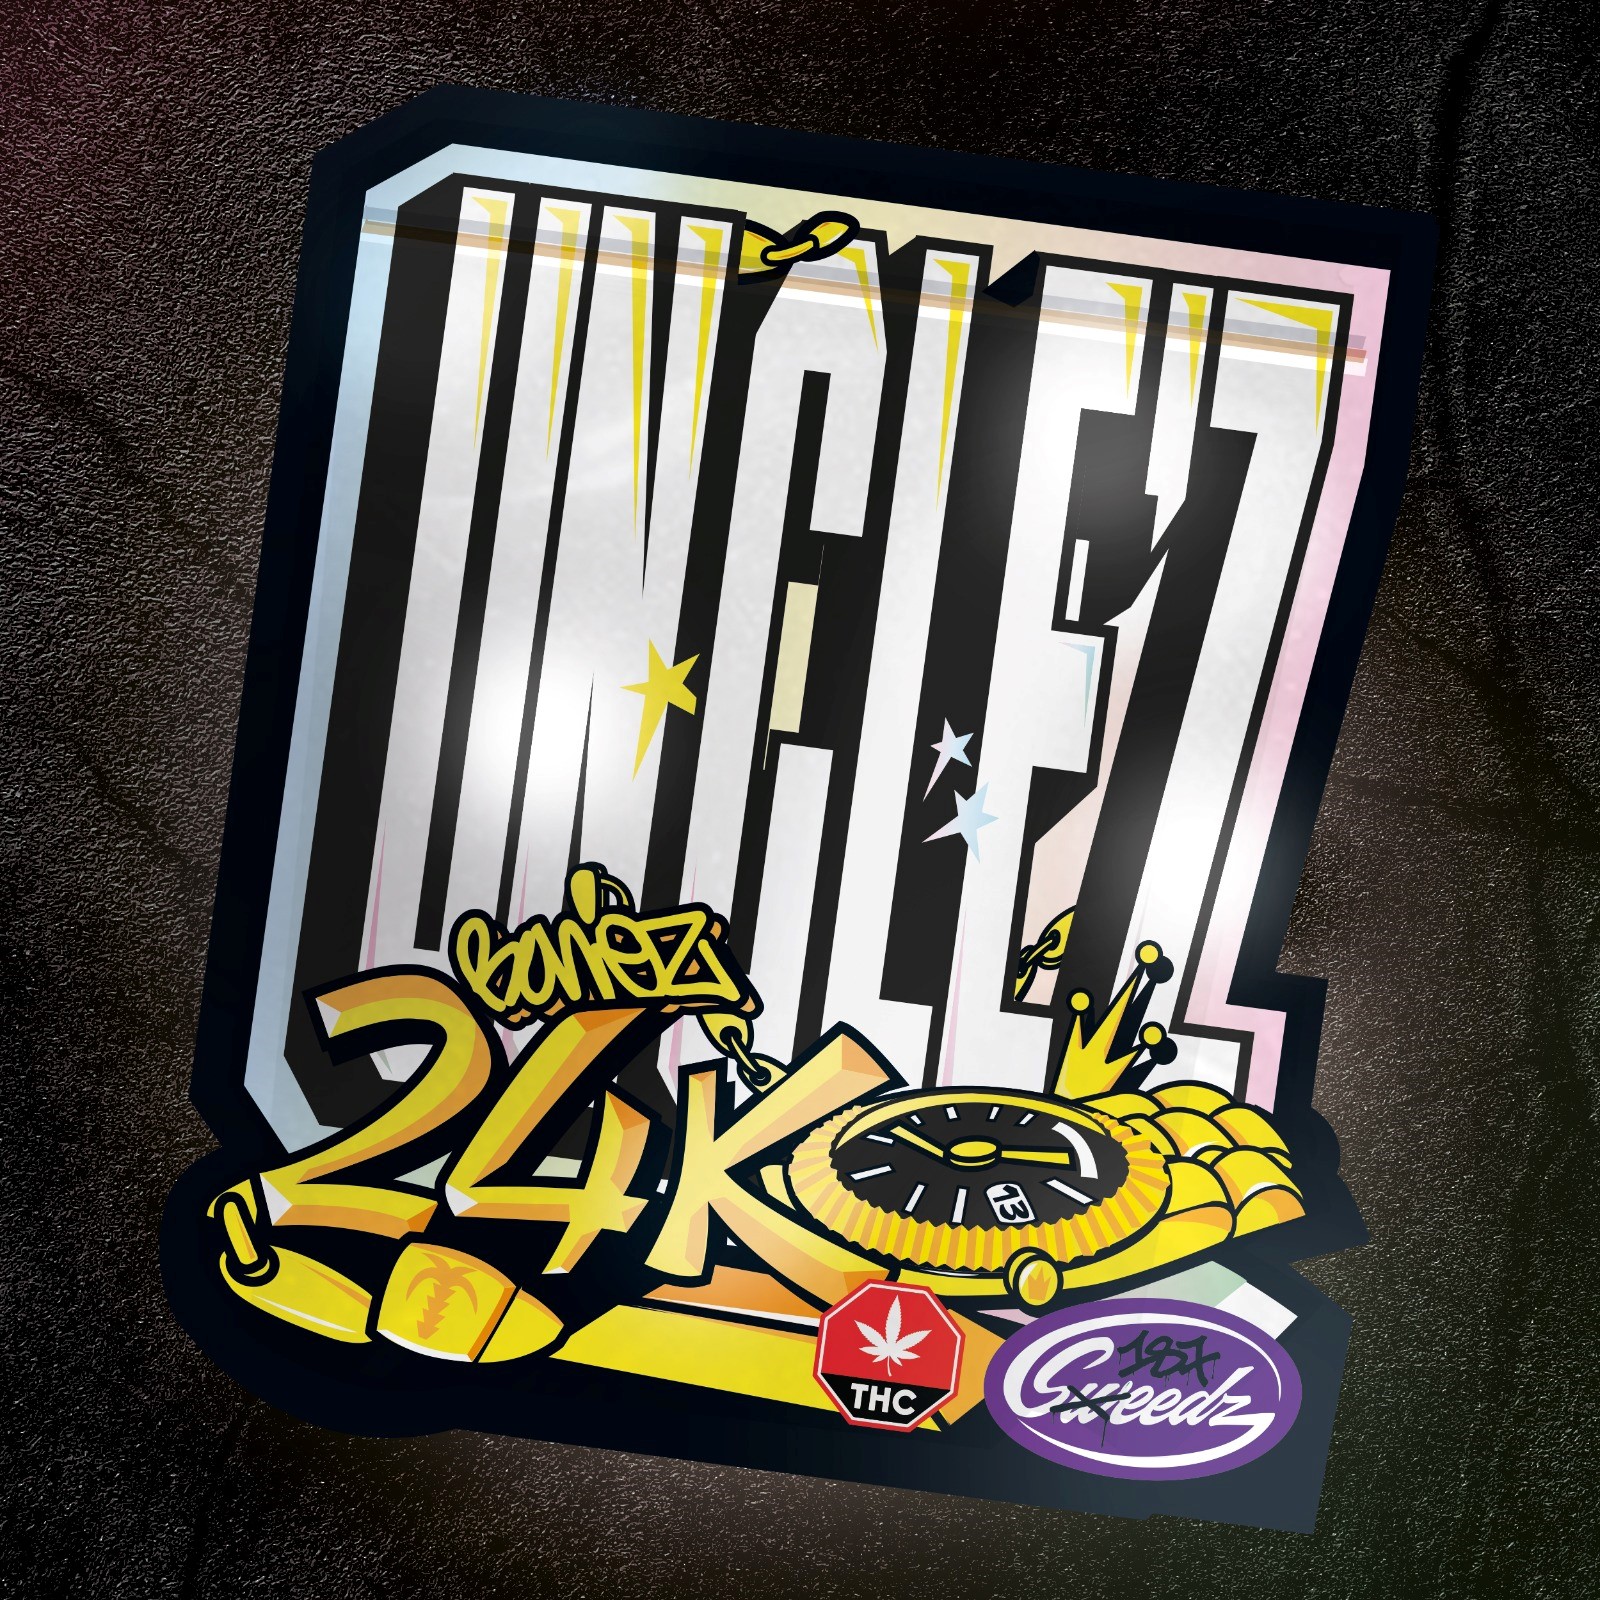 Unclez 24k - 187 Sweedz - Bonez MC - Cannabis Samen (3x)